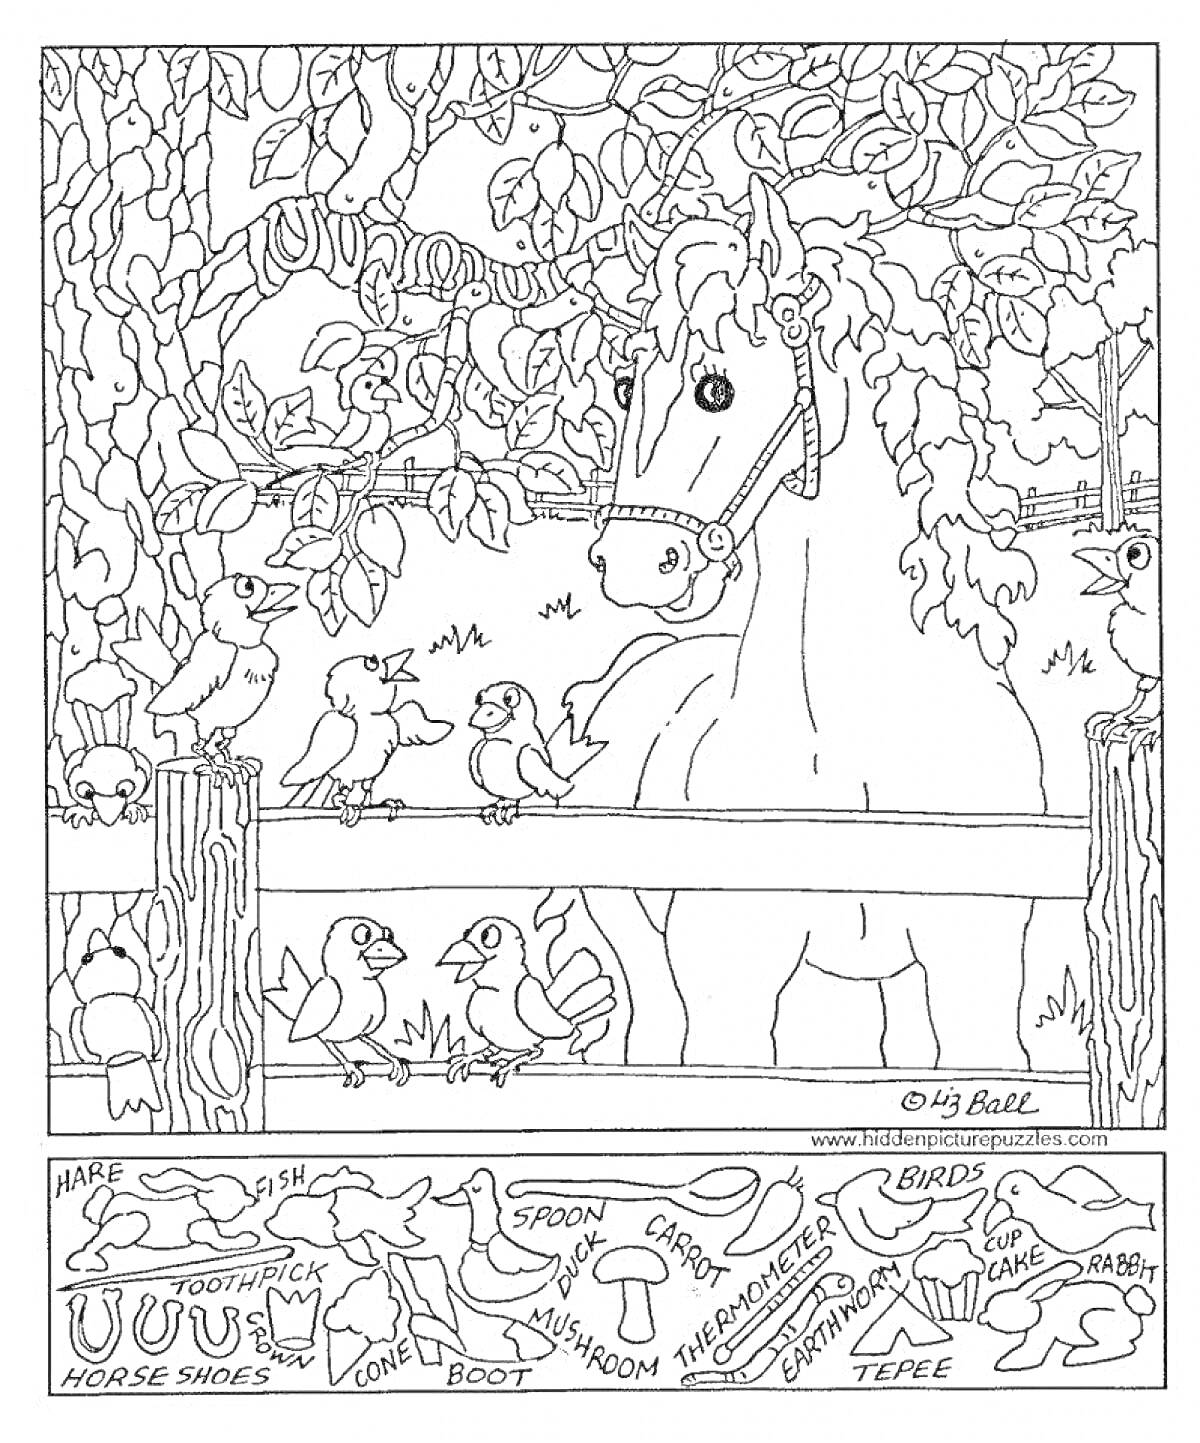 Раскраска Лошадь и птицы в лесу с различными спрятанными предметами